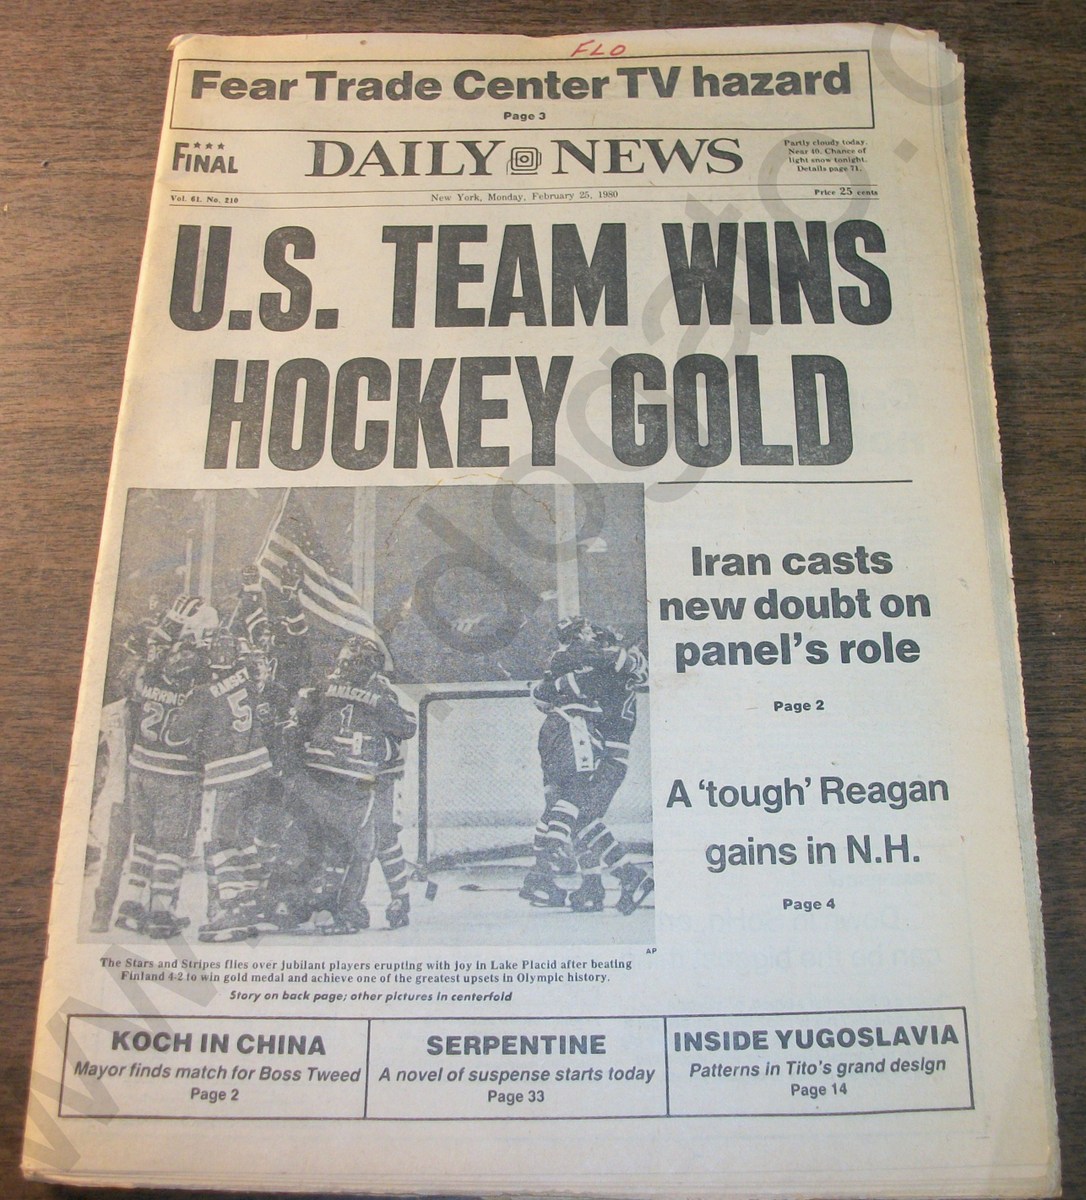 Daily News - Monday, February 25, 1980 US Hockey Team